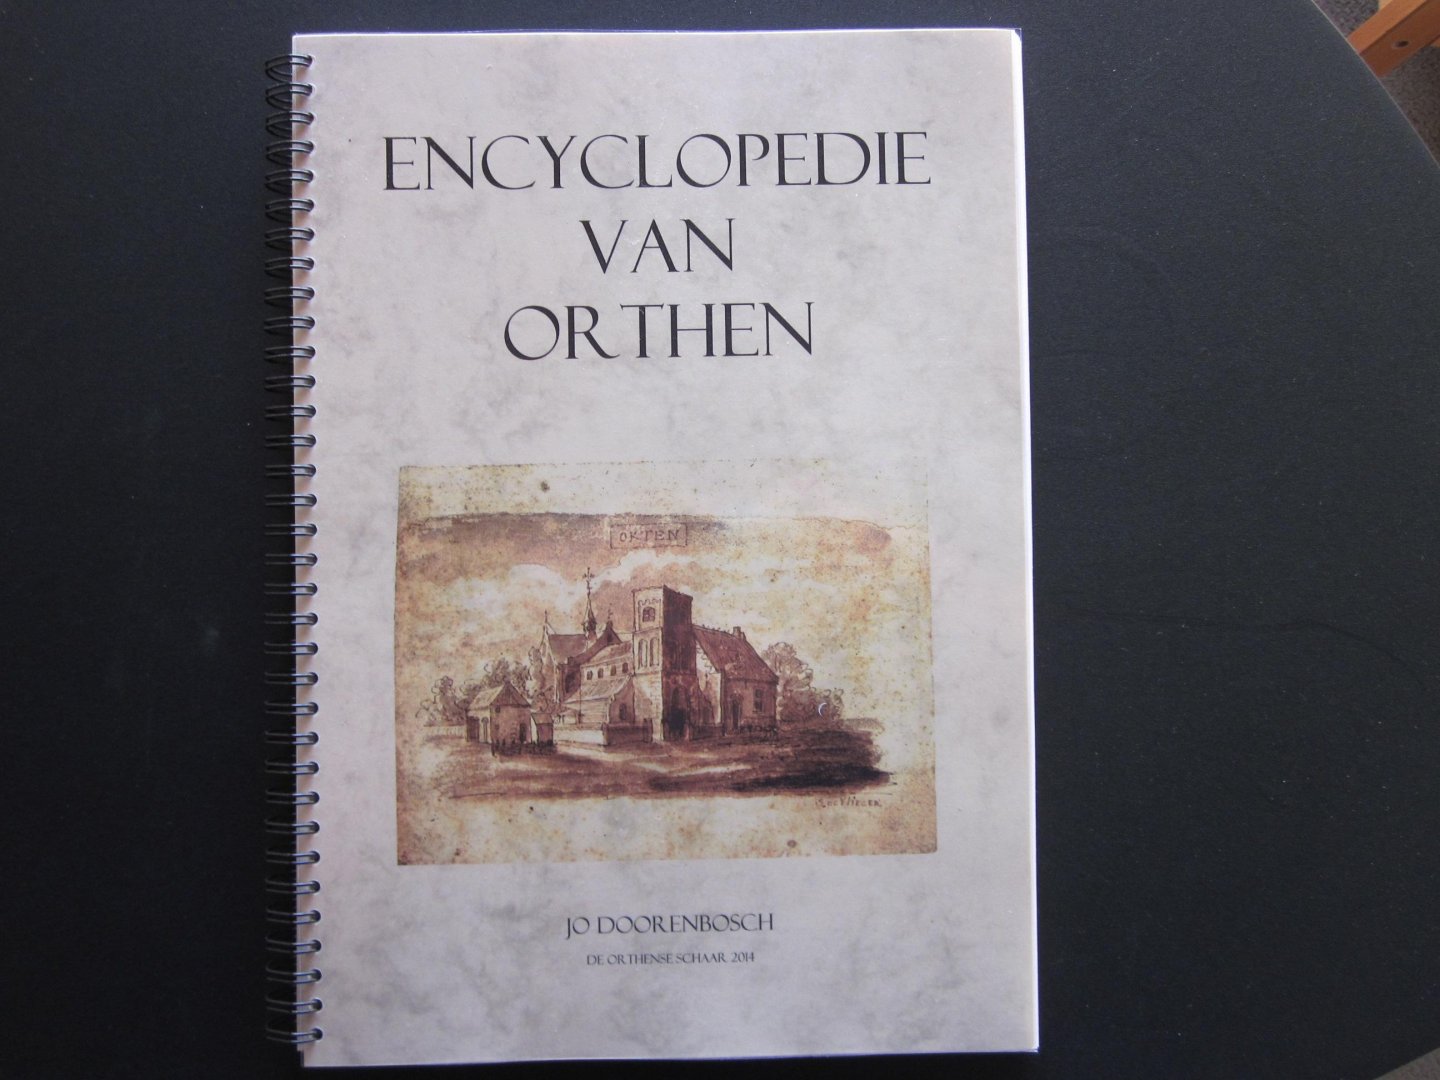 Doorenbosch Jo - Encyclopedie van Orthen